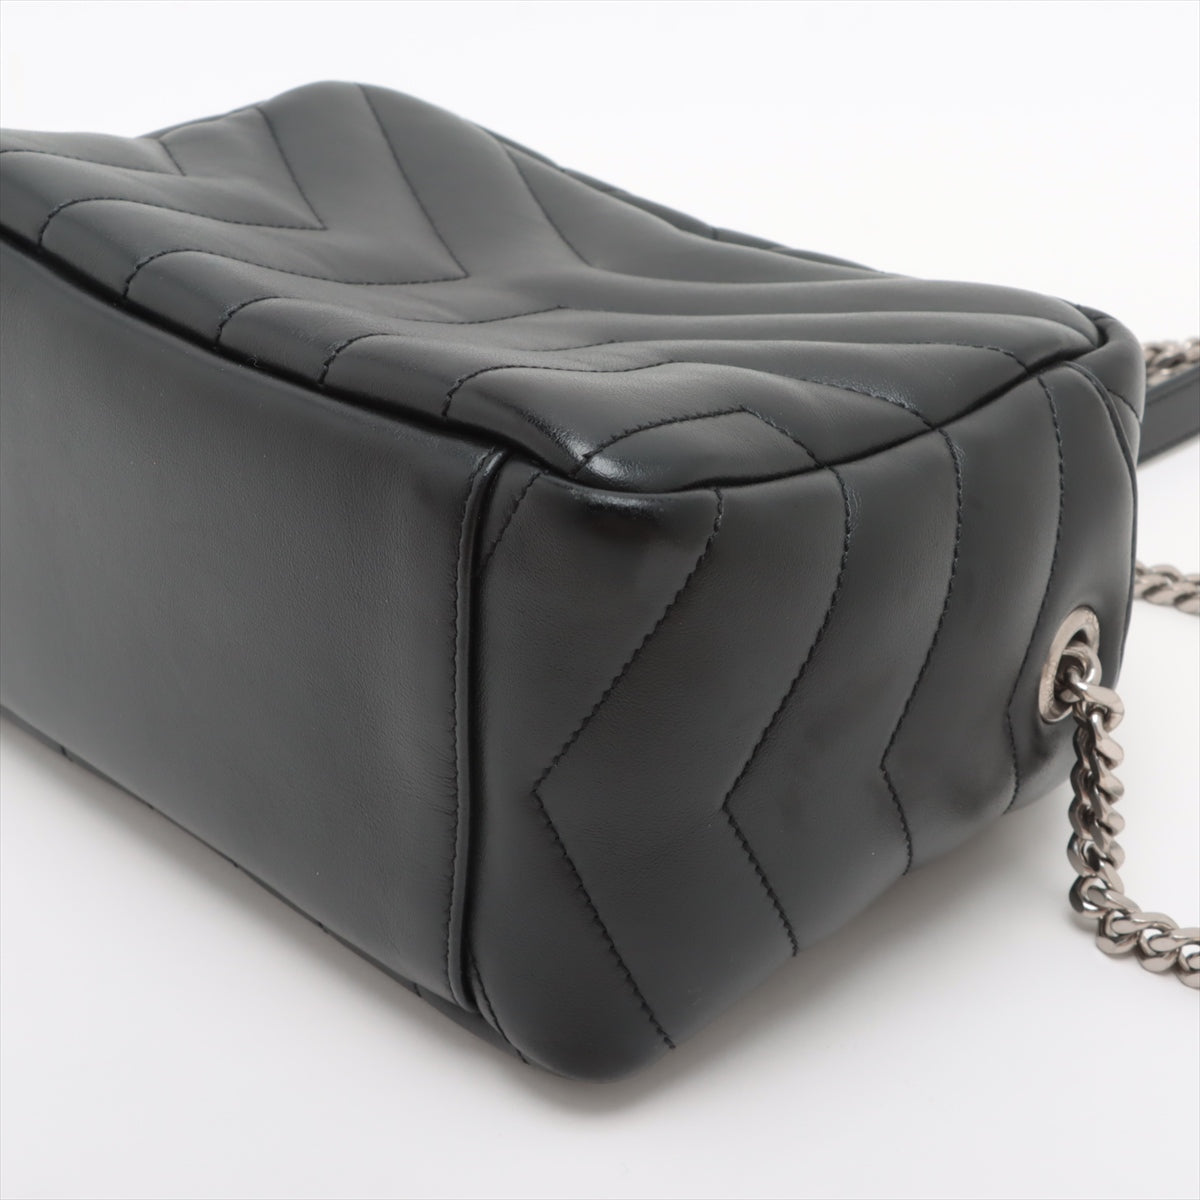 Saint Laurent Paris Lulu Leather Chain shoulder bag Black 574102